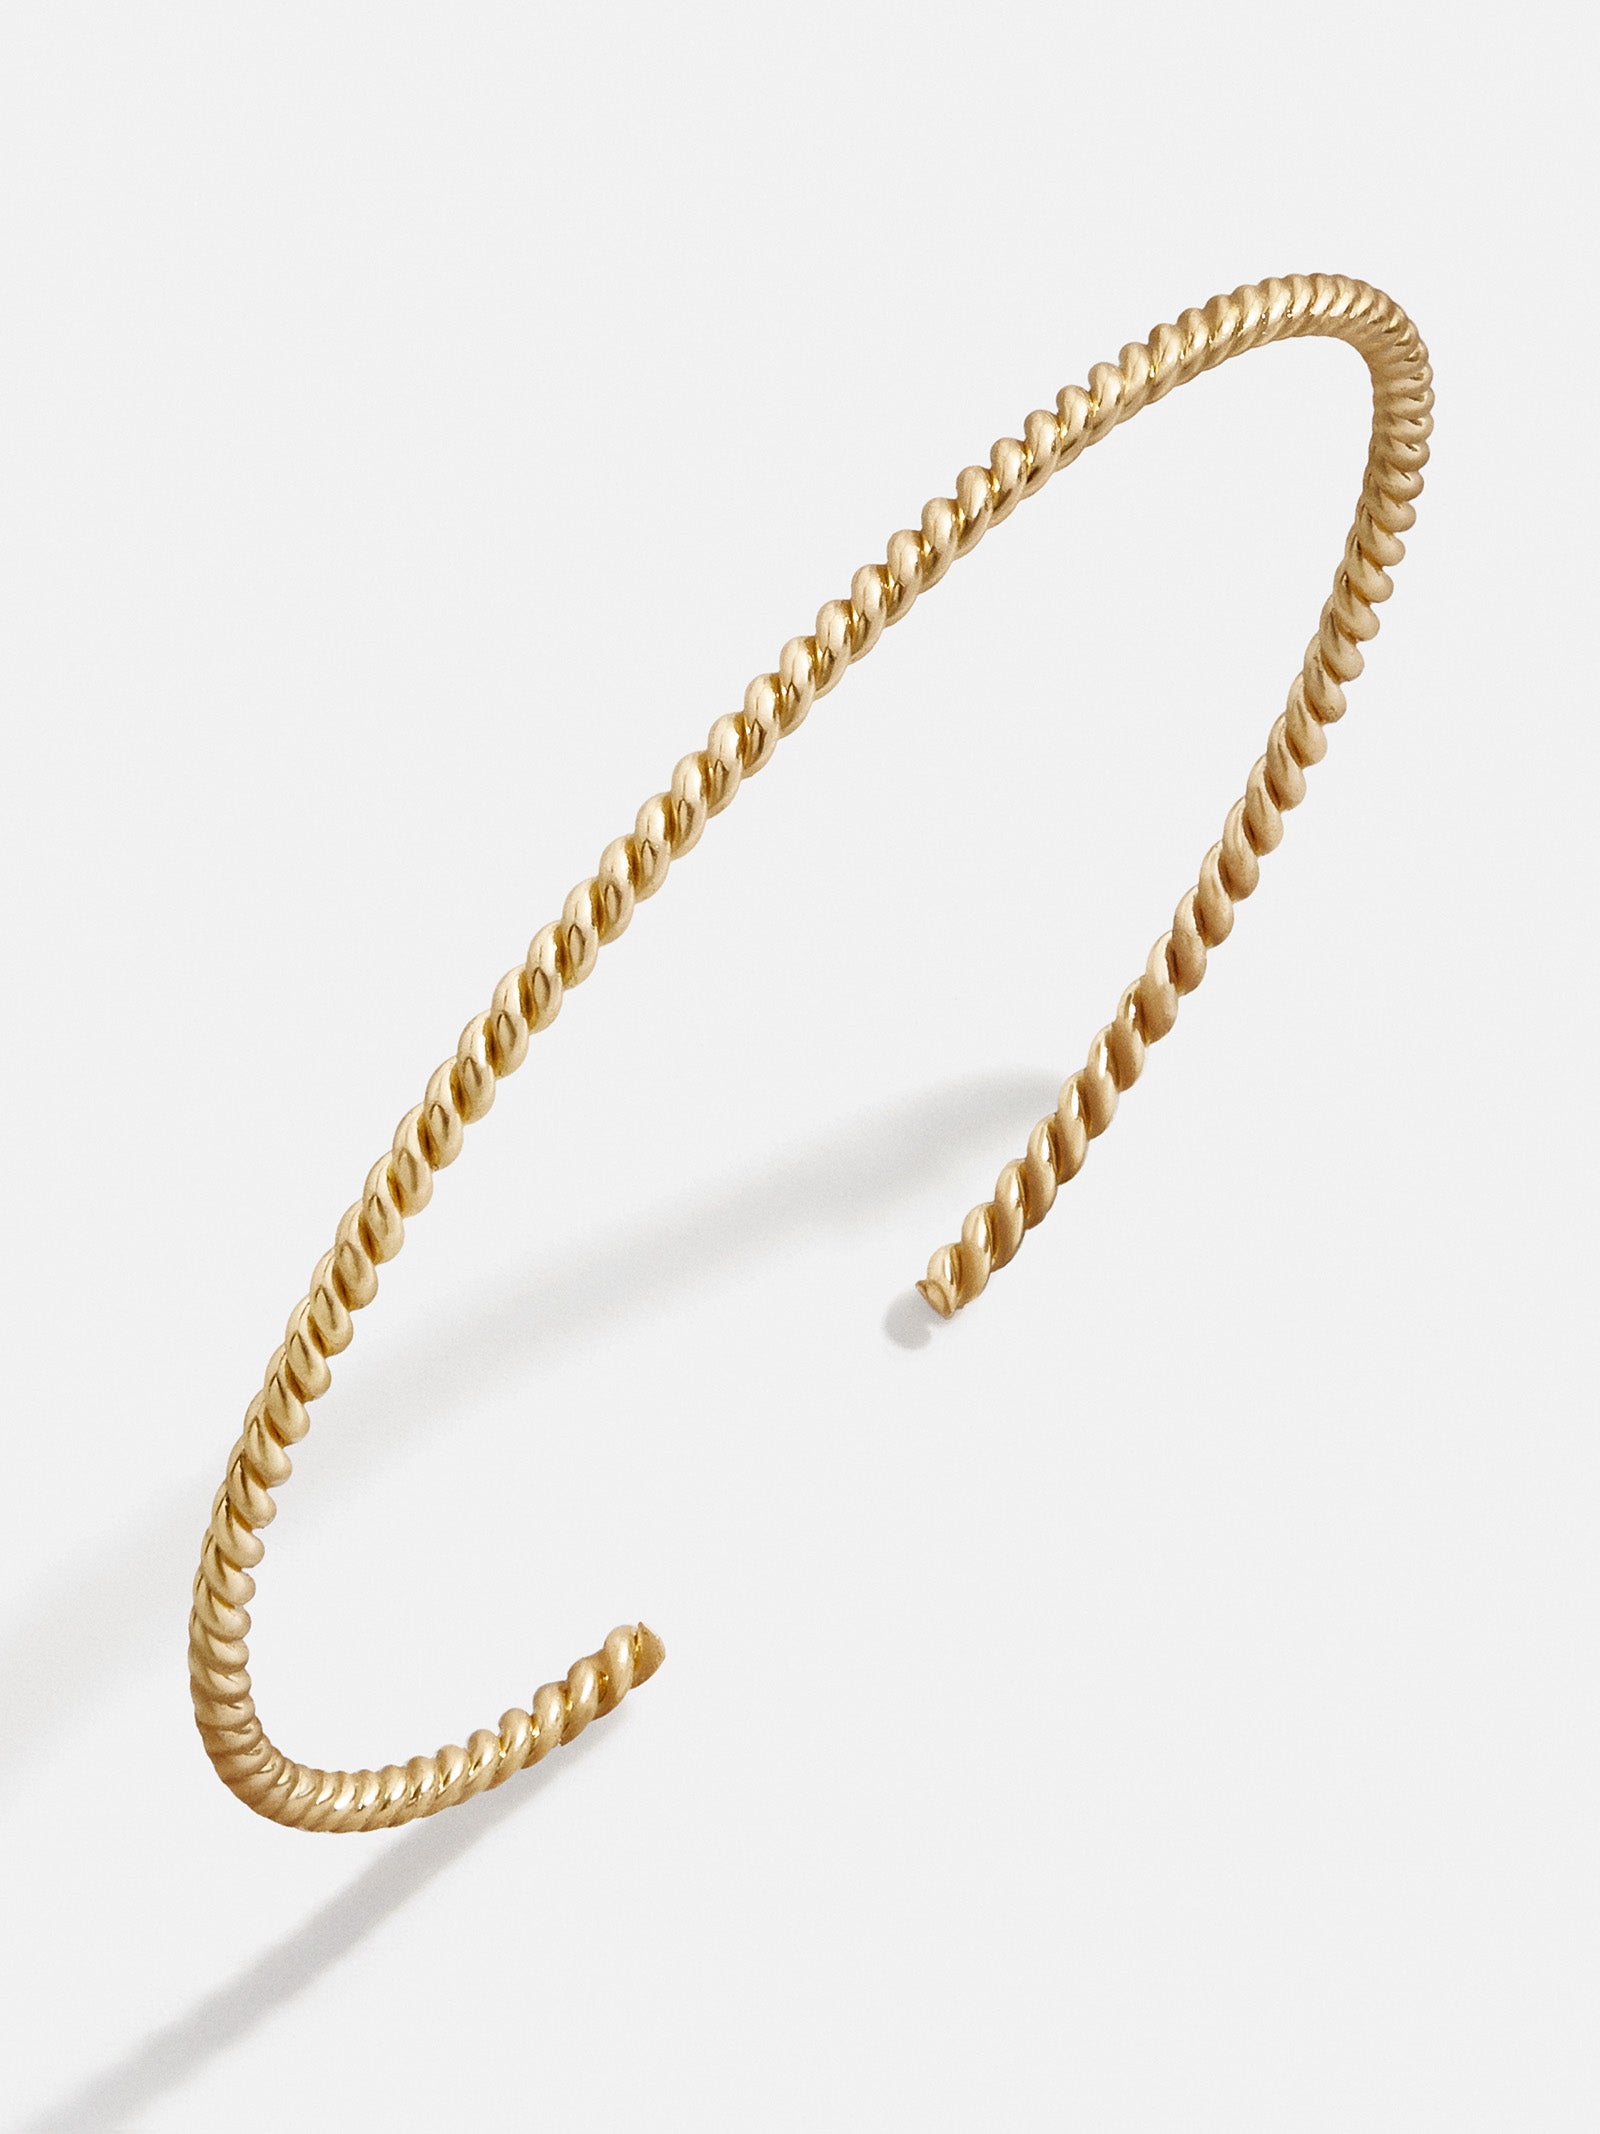 Baublebar Kiera 18K Gold Cuff Bracelet